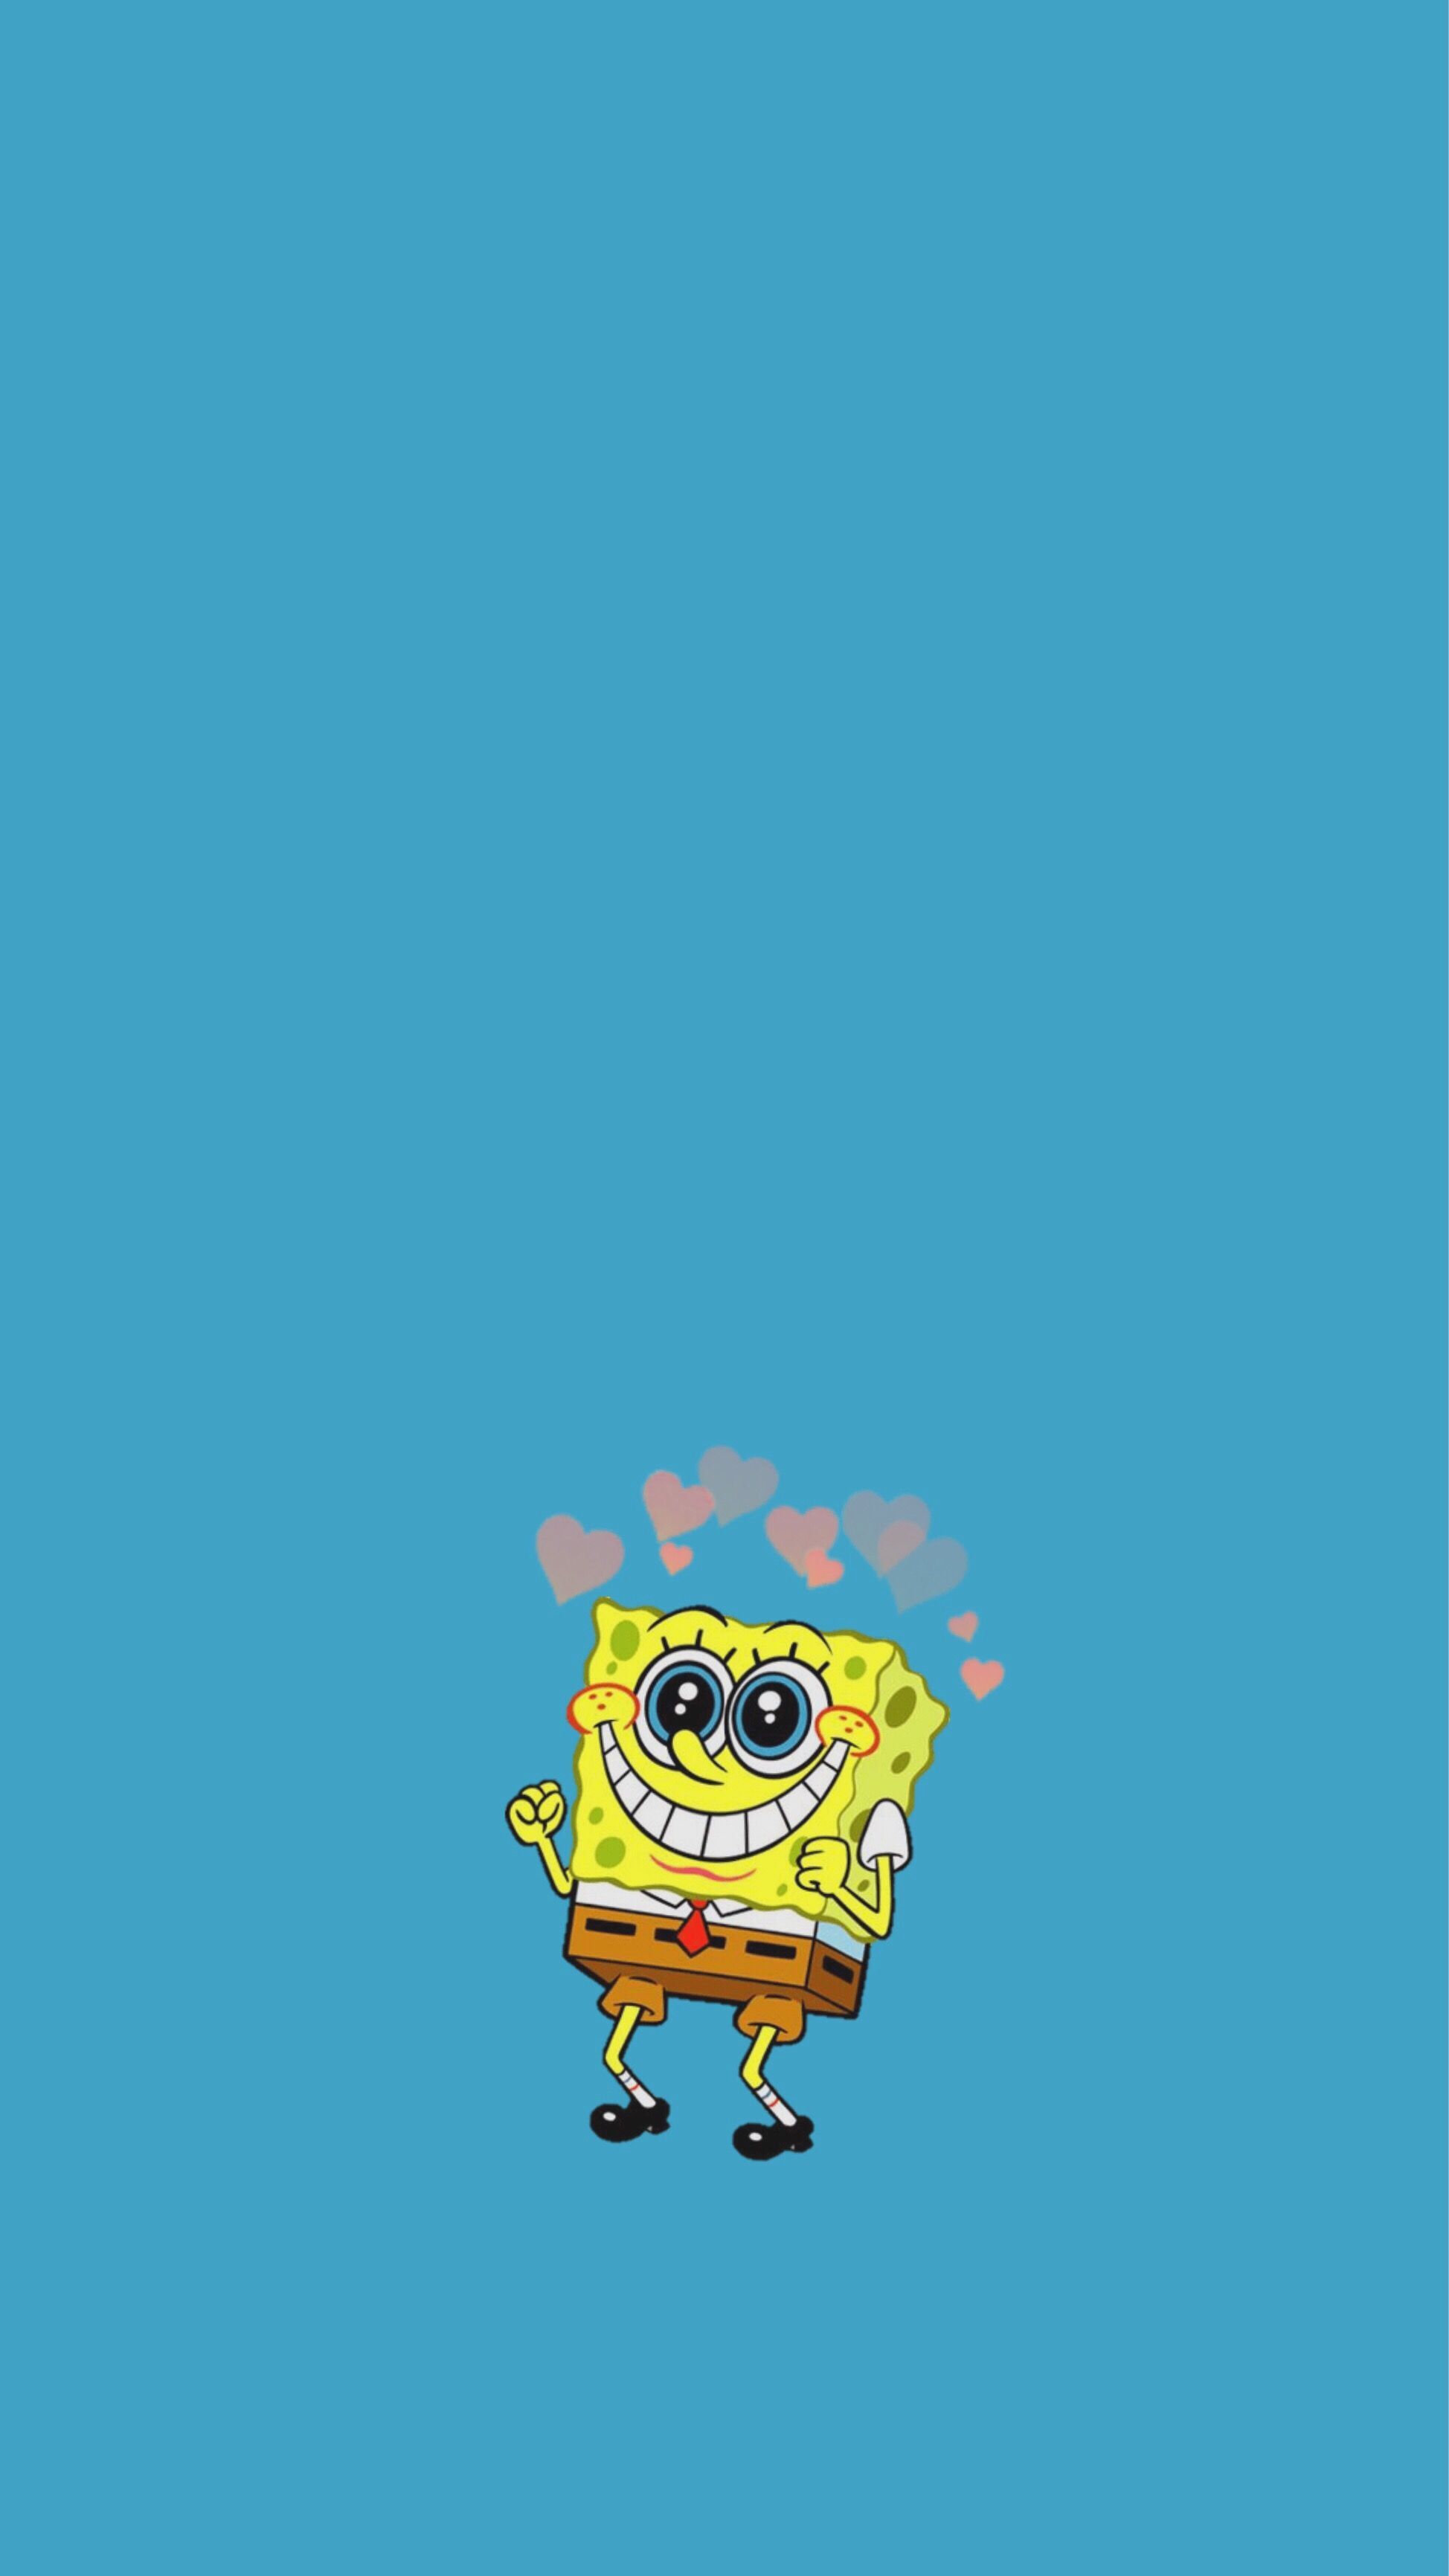 background #spongebob #spongebobaesthetic #spongebobwallpaper